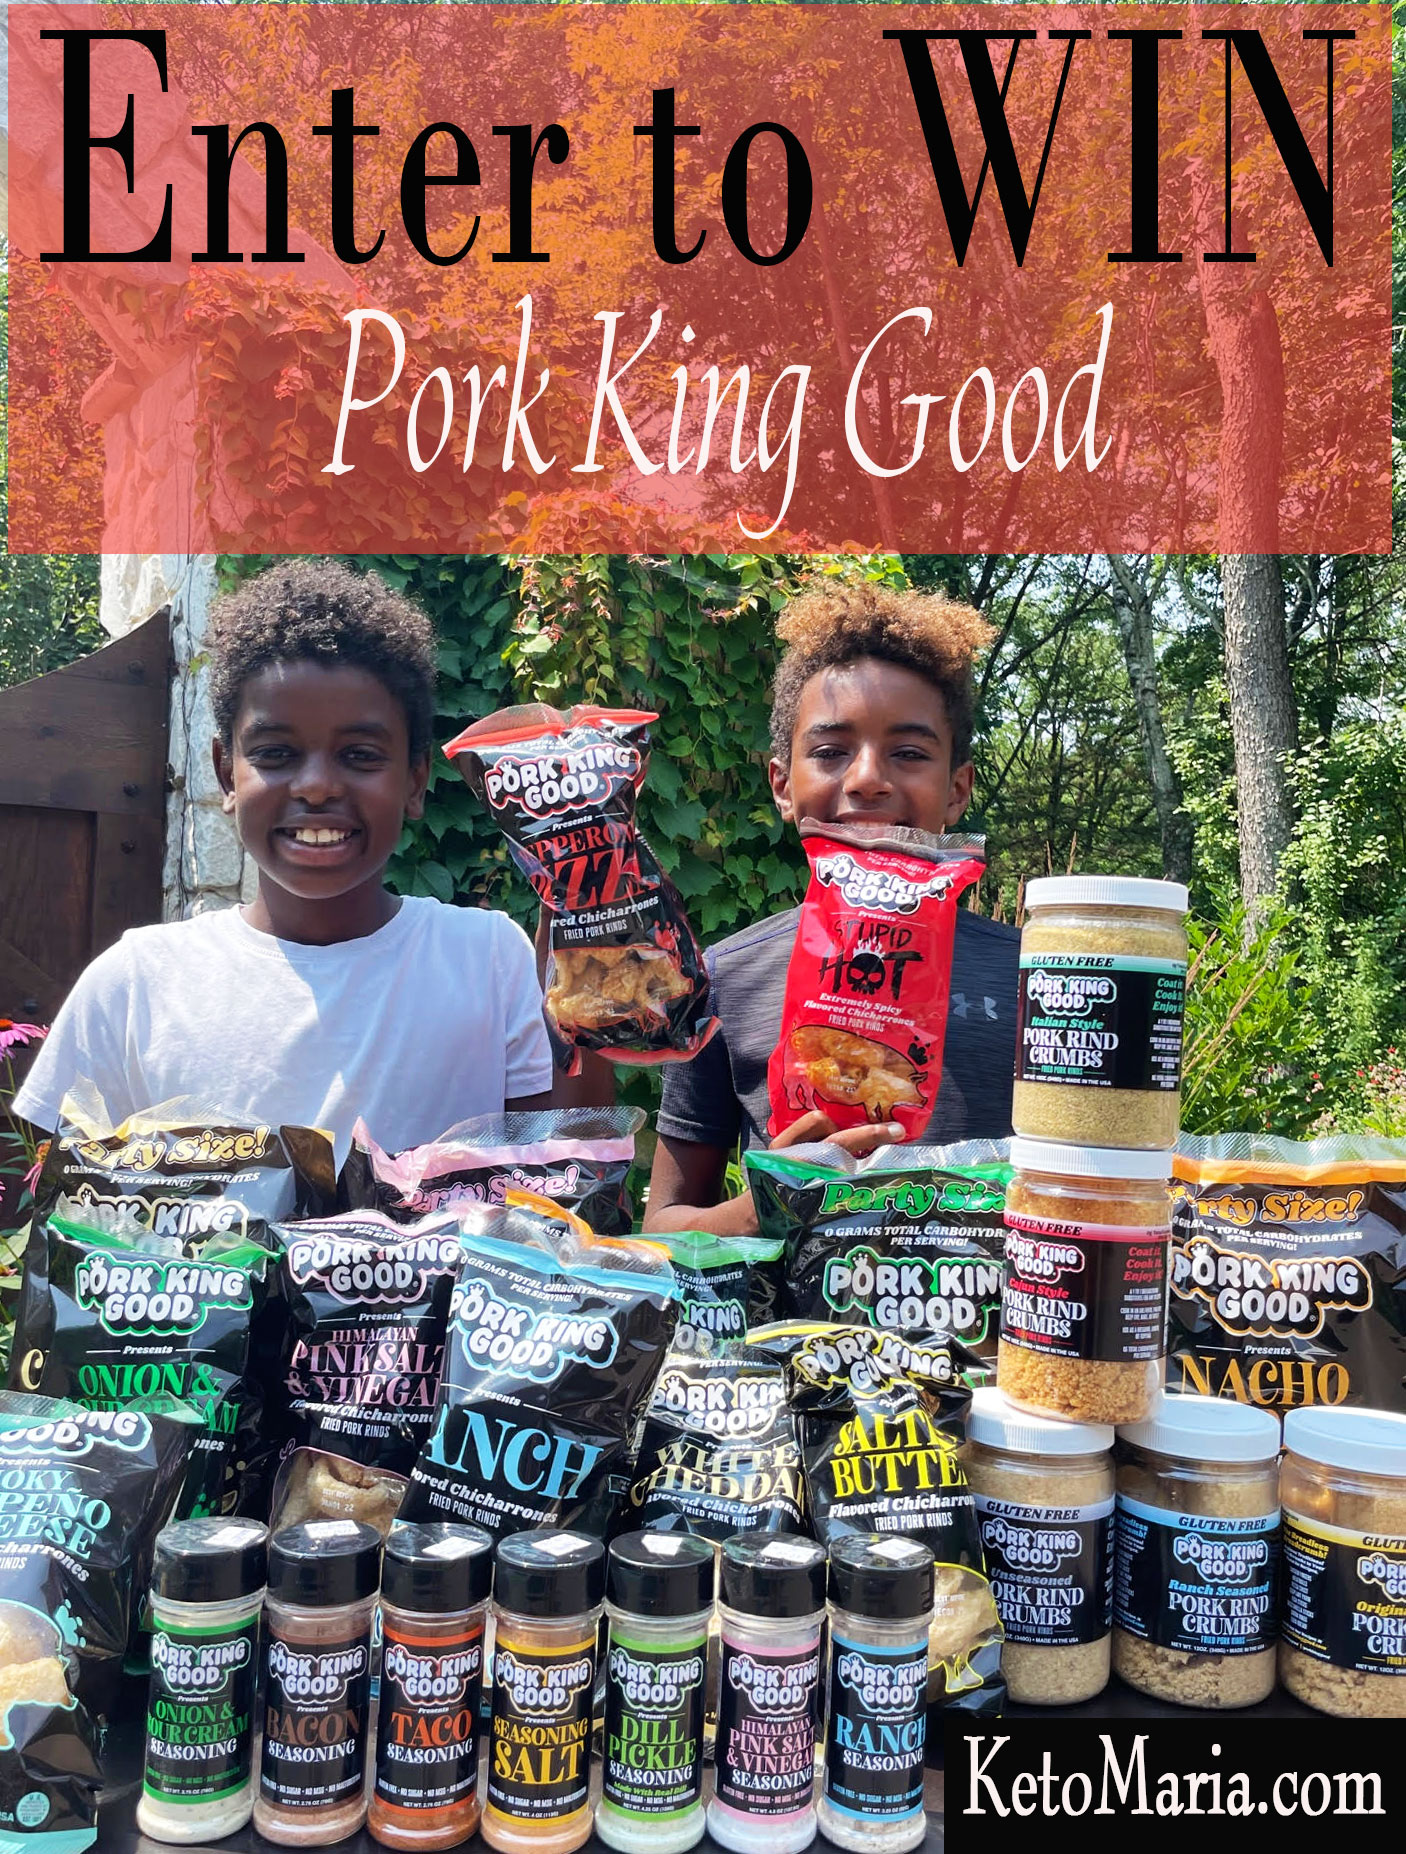 Pork King Good (porkkinggood)